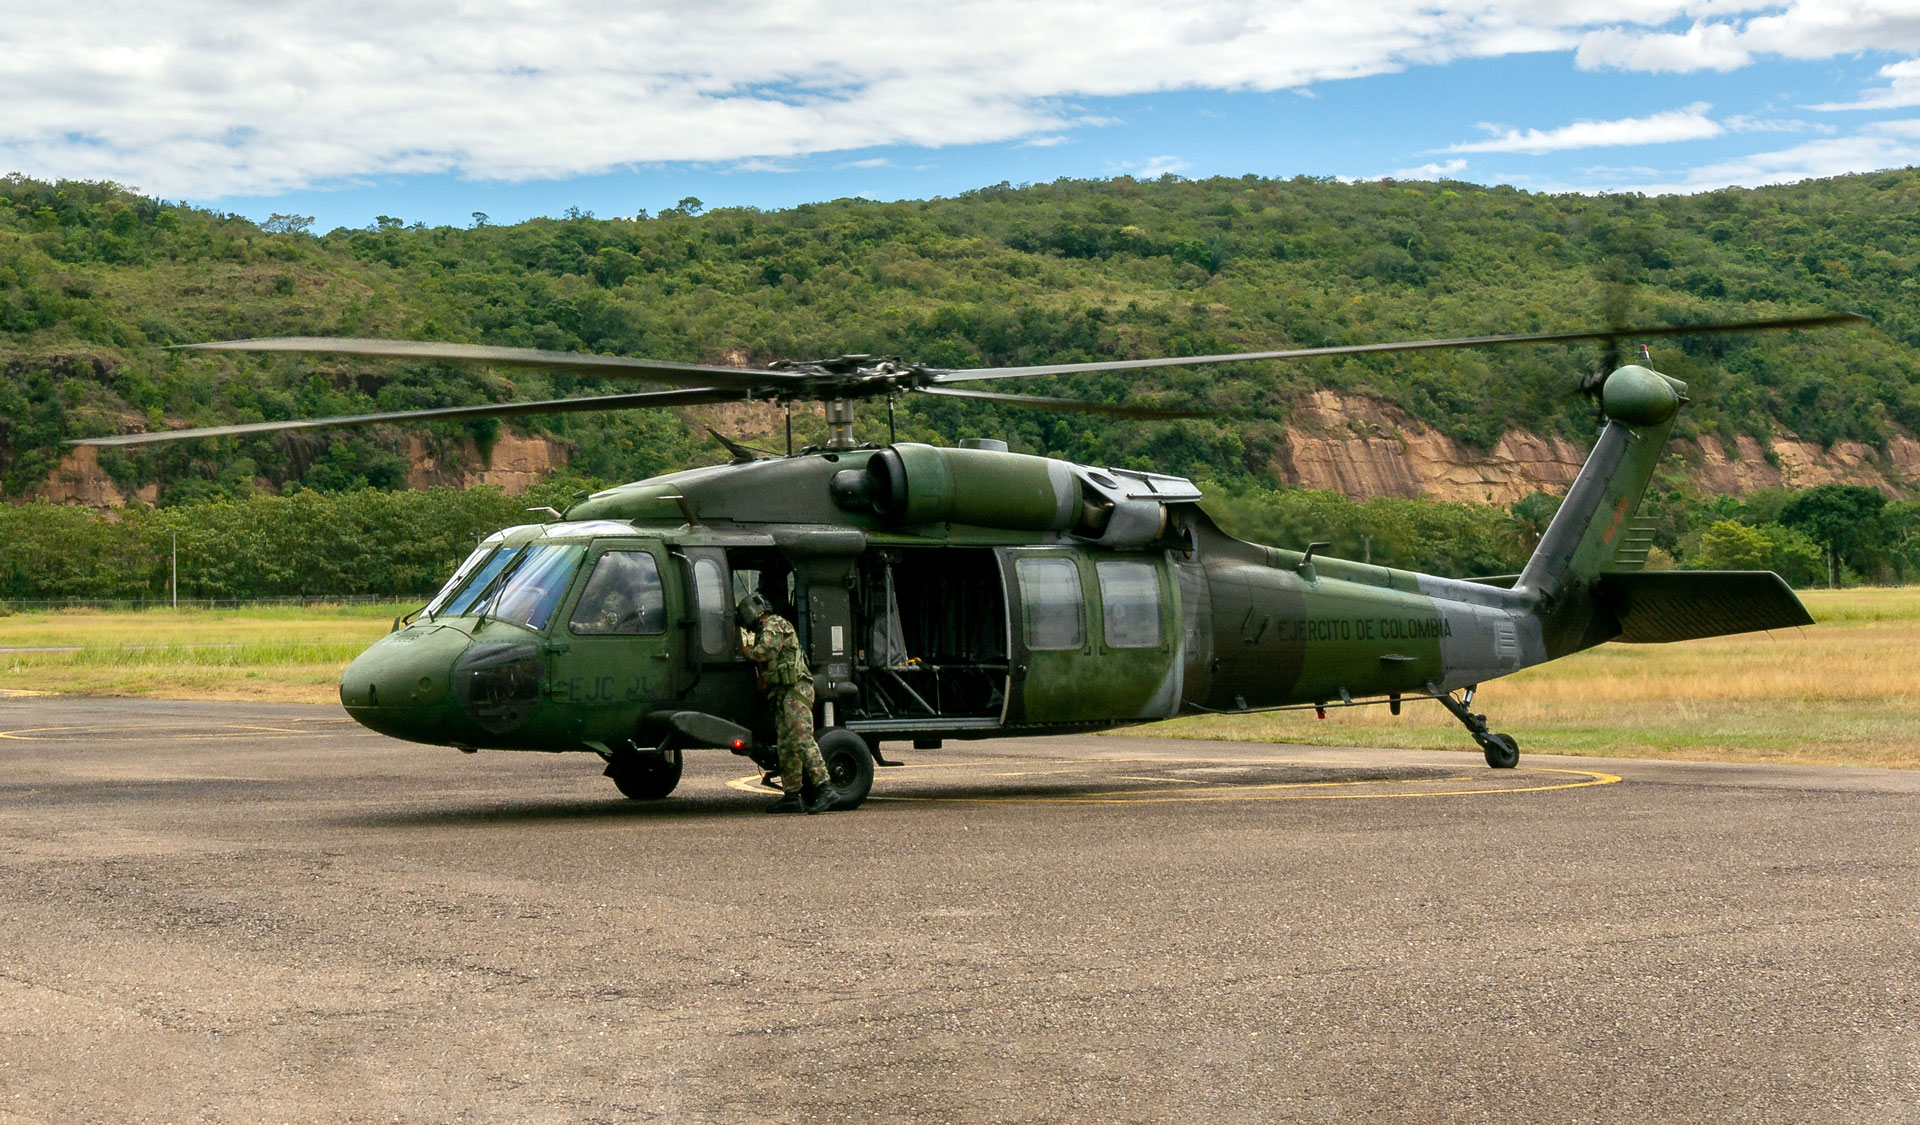 O CIAC fornecerá peças de reposição para os helicópteros黑鹰军事操作员Polícia Nacional da Colômbia。